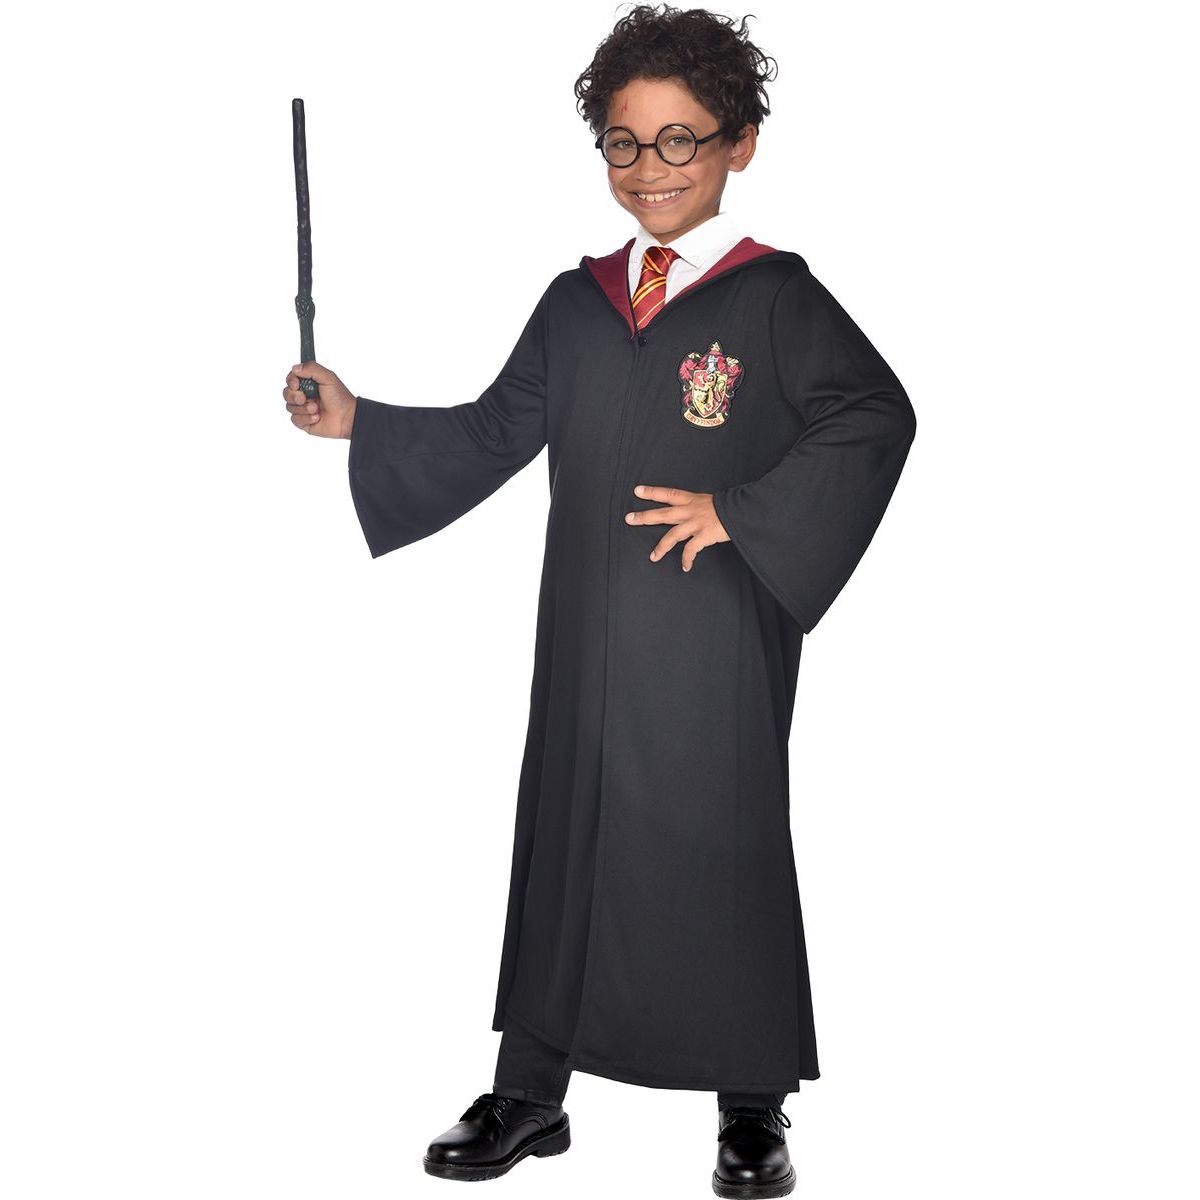 Epee Dětský kostým Harry Potter plášť 6-8 let